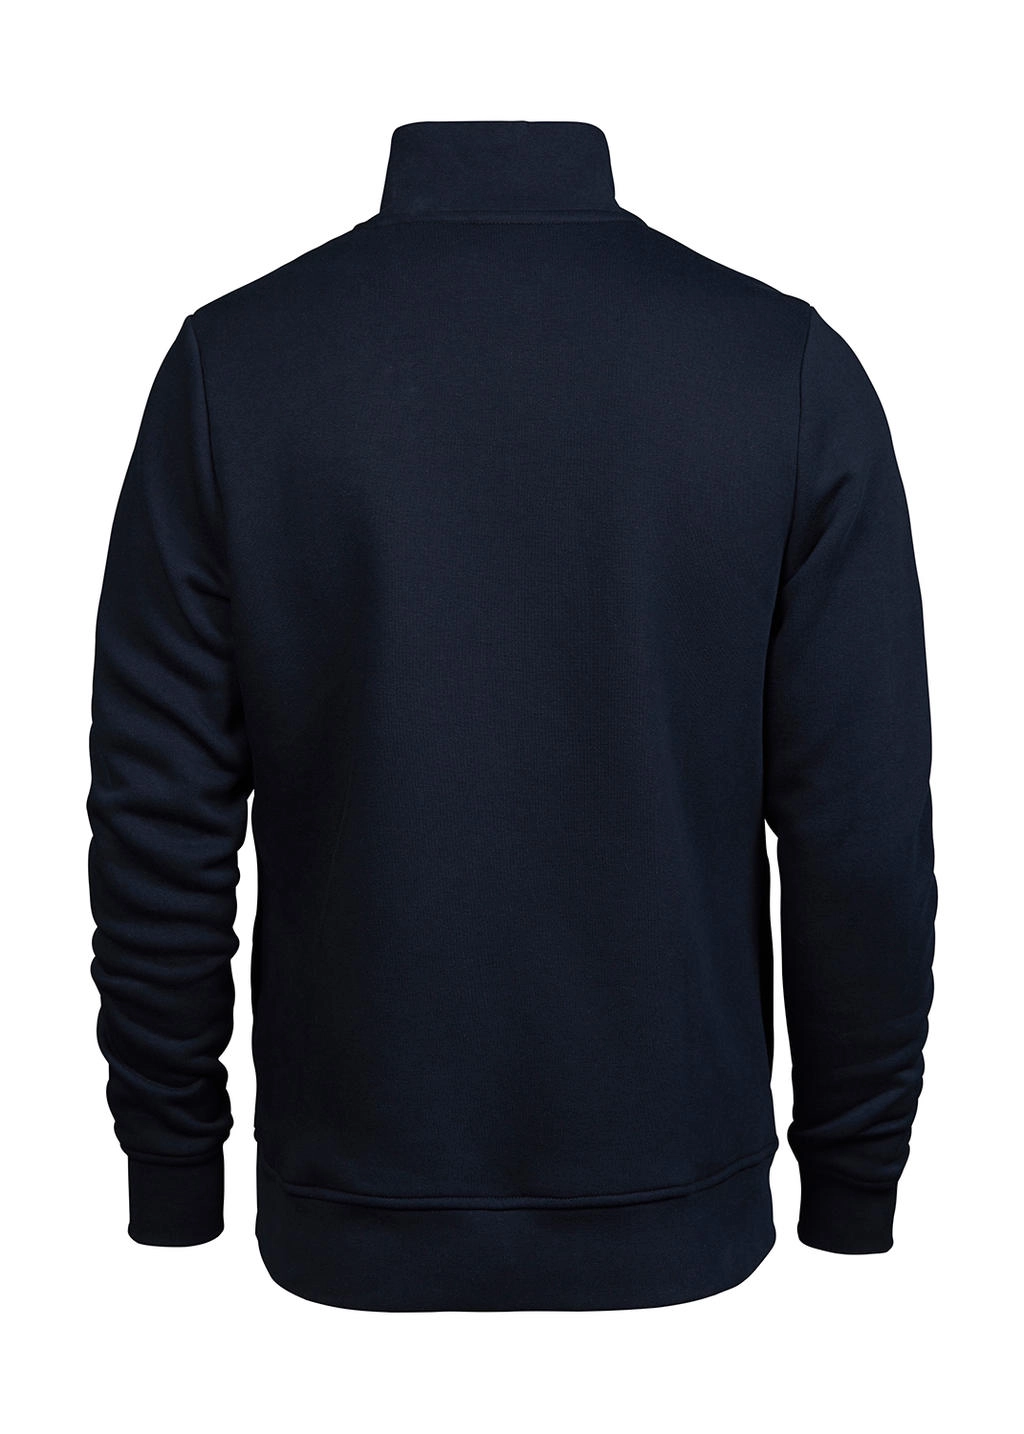 Half Zip Sweatshirt zum Besticken und Bedrucken in der Farbe Navy mit Ihren Logo, Schriftzug oder Motiv.